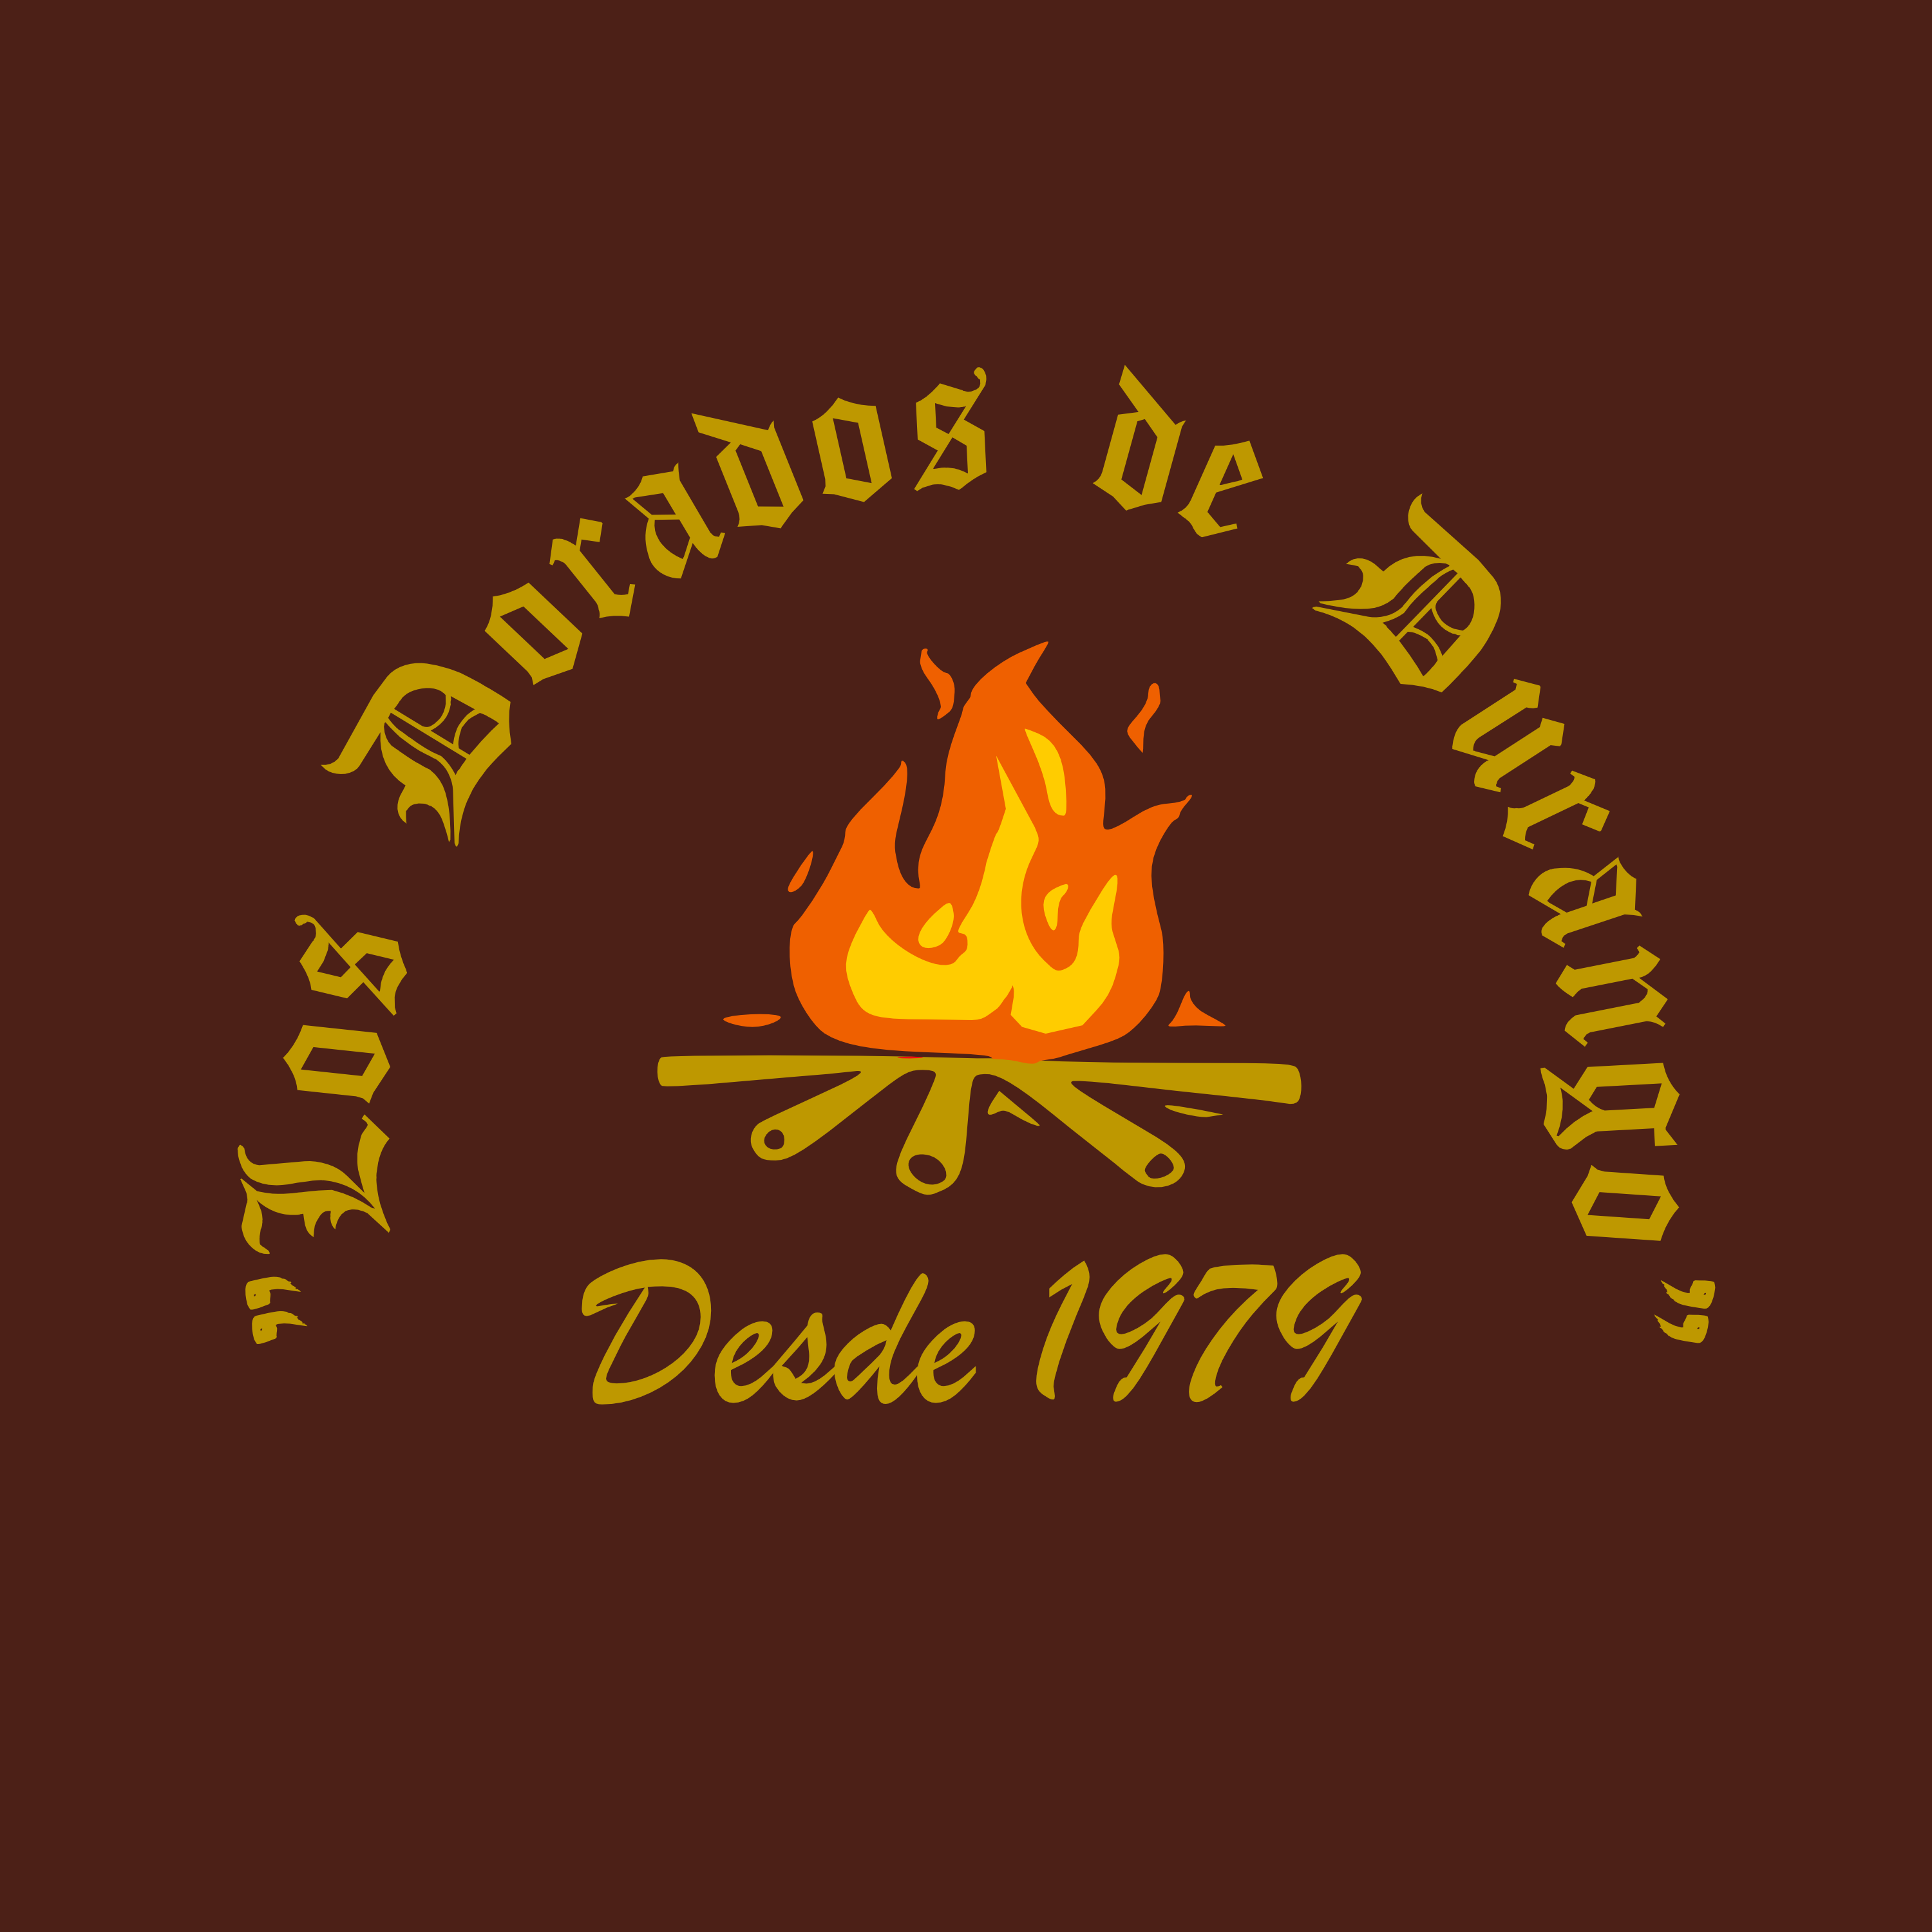 Los Dorados de Durango